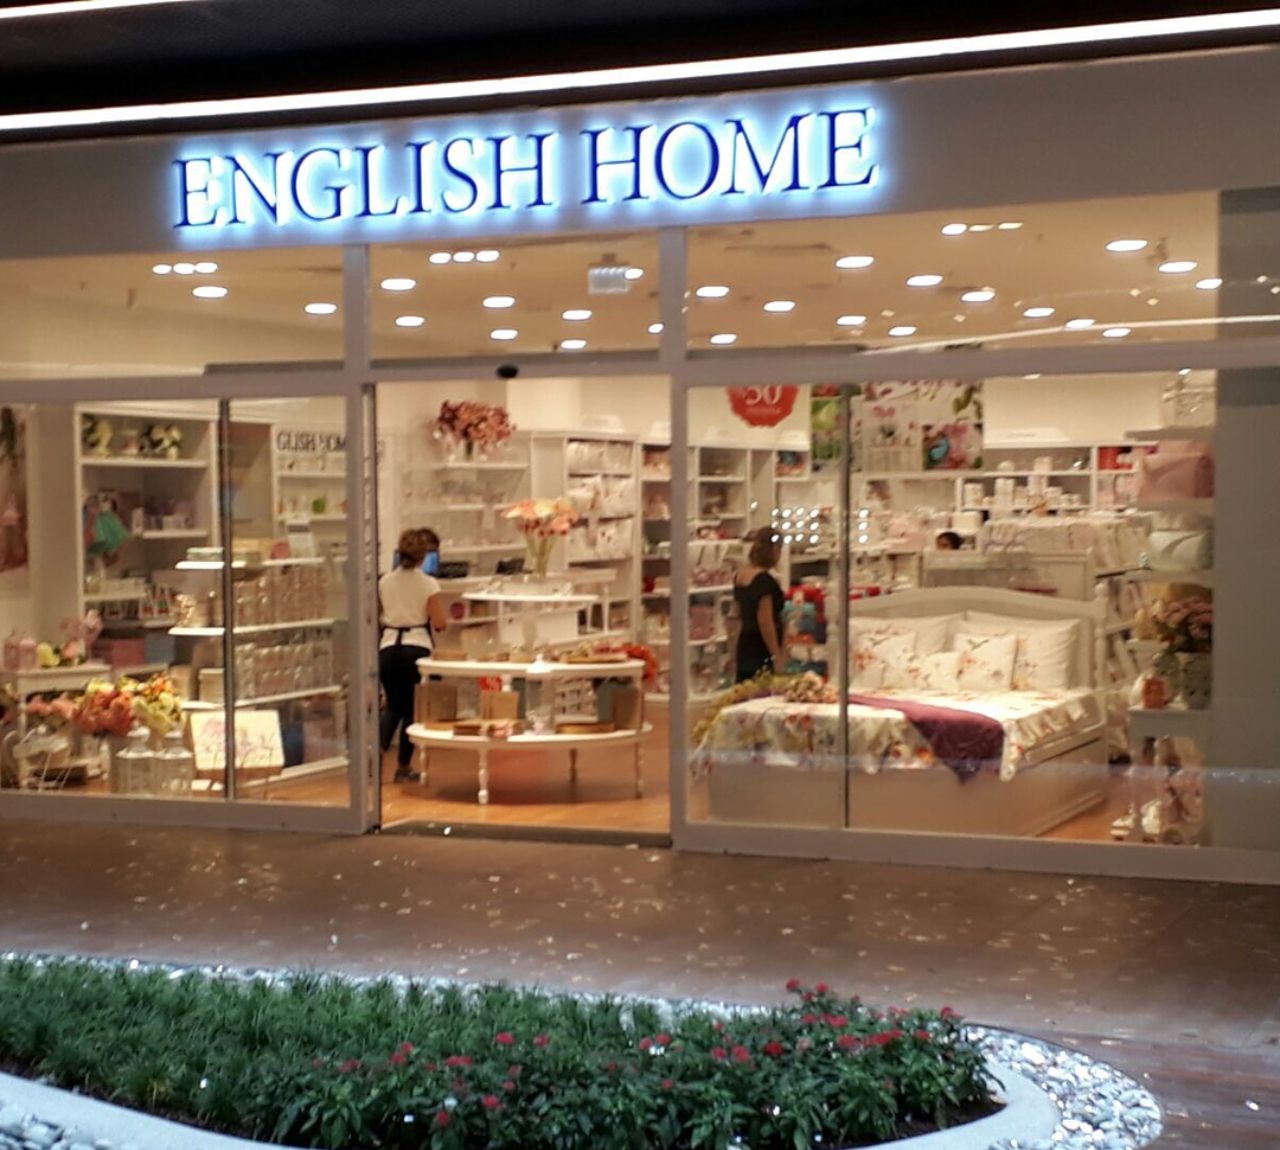 İzmir Ege Perla AVM English Home Mağazası